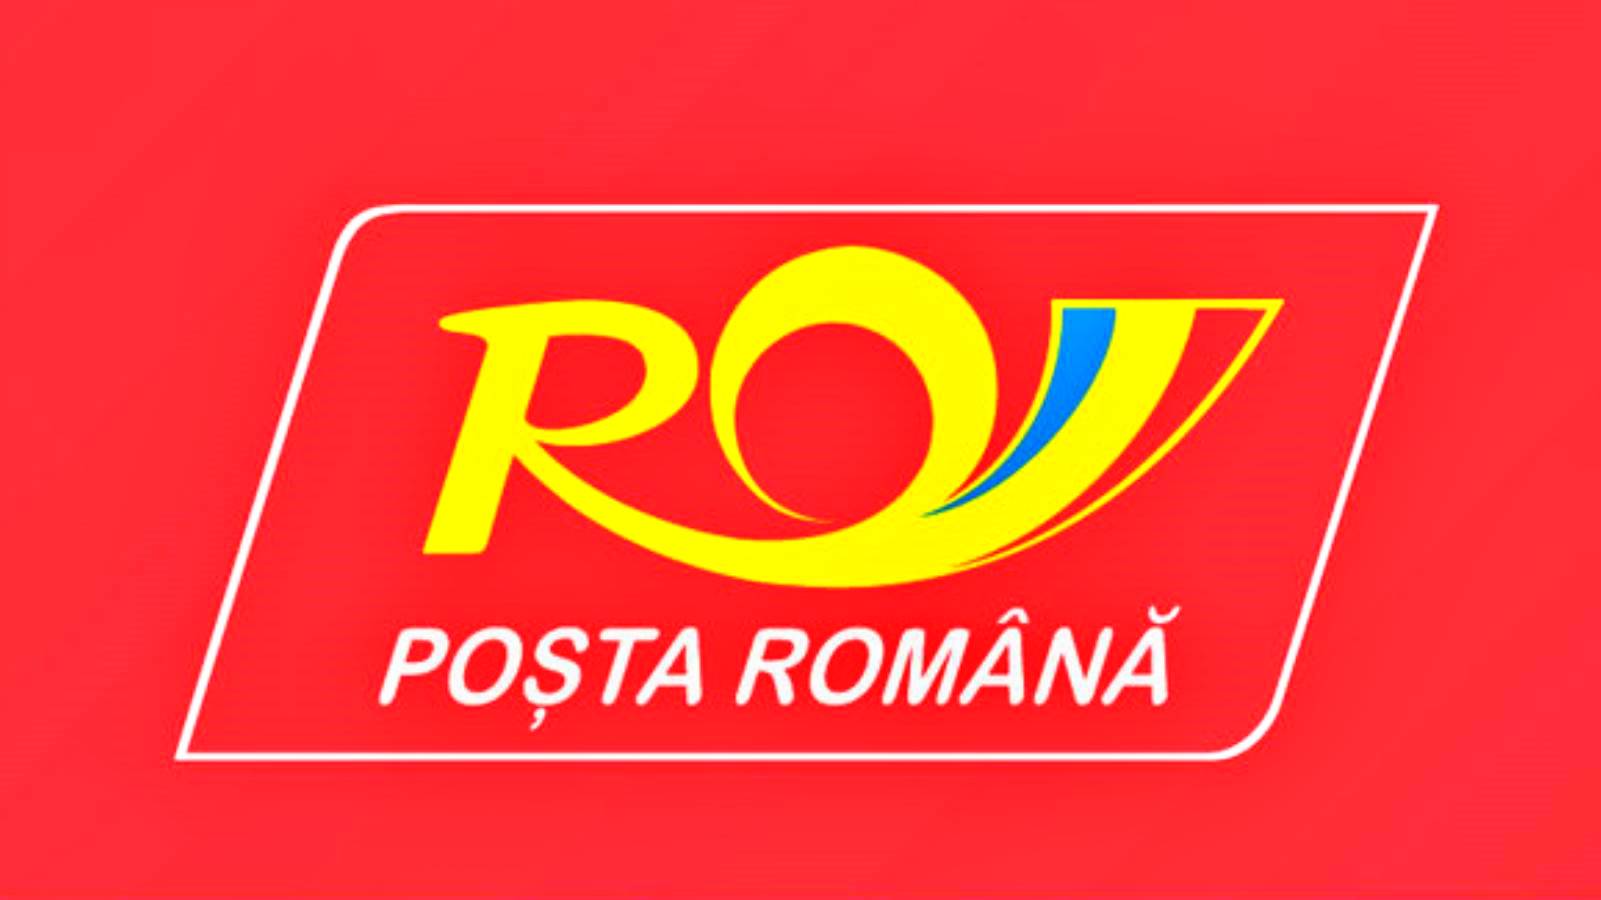 Die Rumänische Post informiert Rumänen darüber, was viele Menschen NICHT wussten